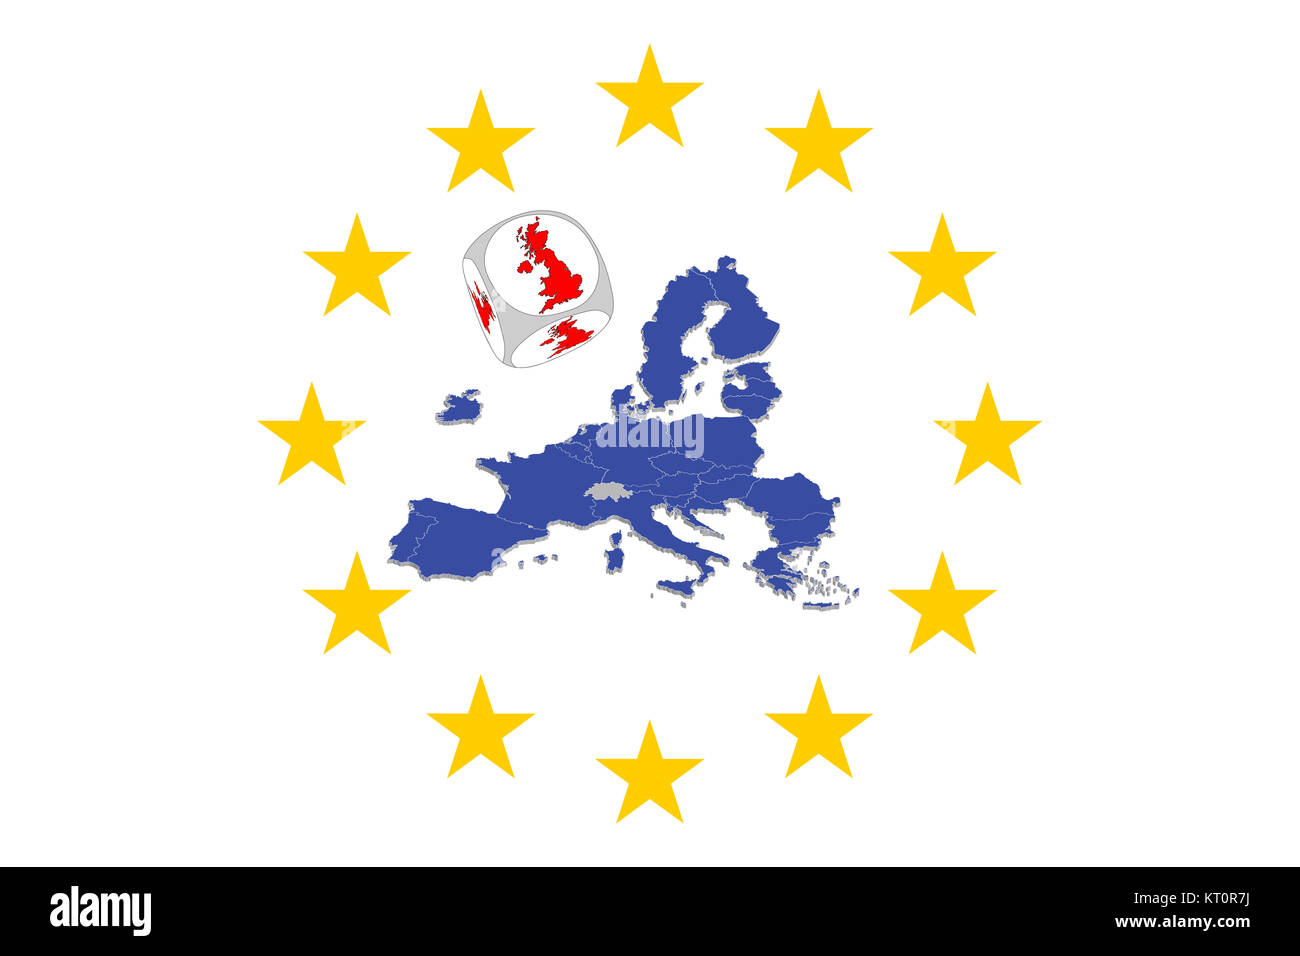 Mappa Europa con dadi proposta di referendum sul regno unito l'adesione all'Unione europea Foto Stock